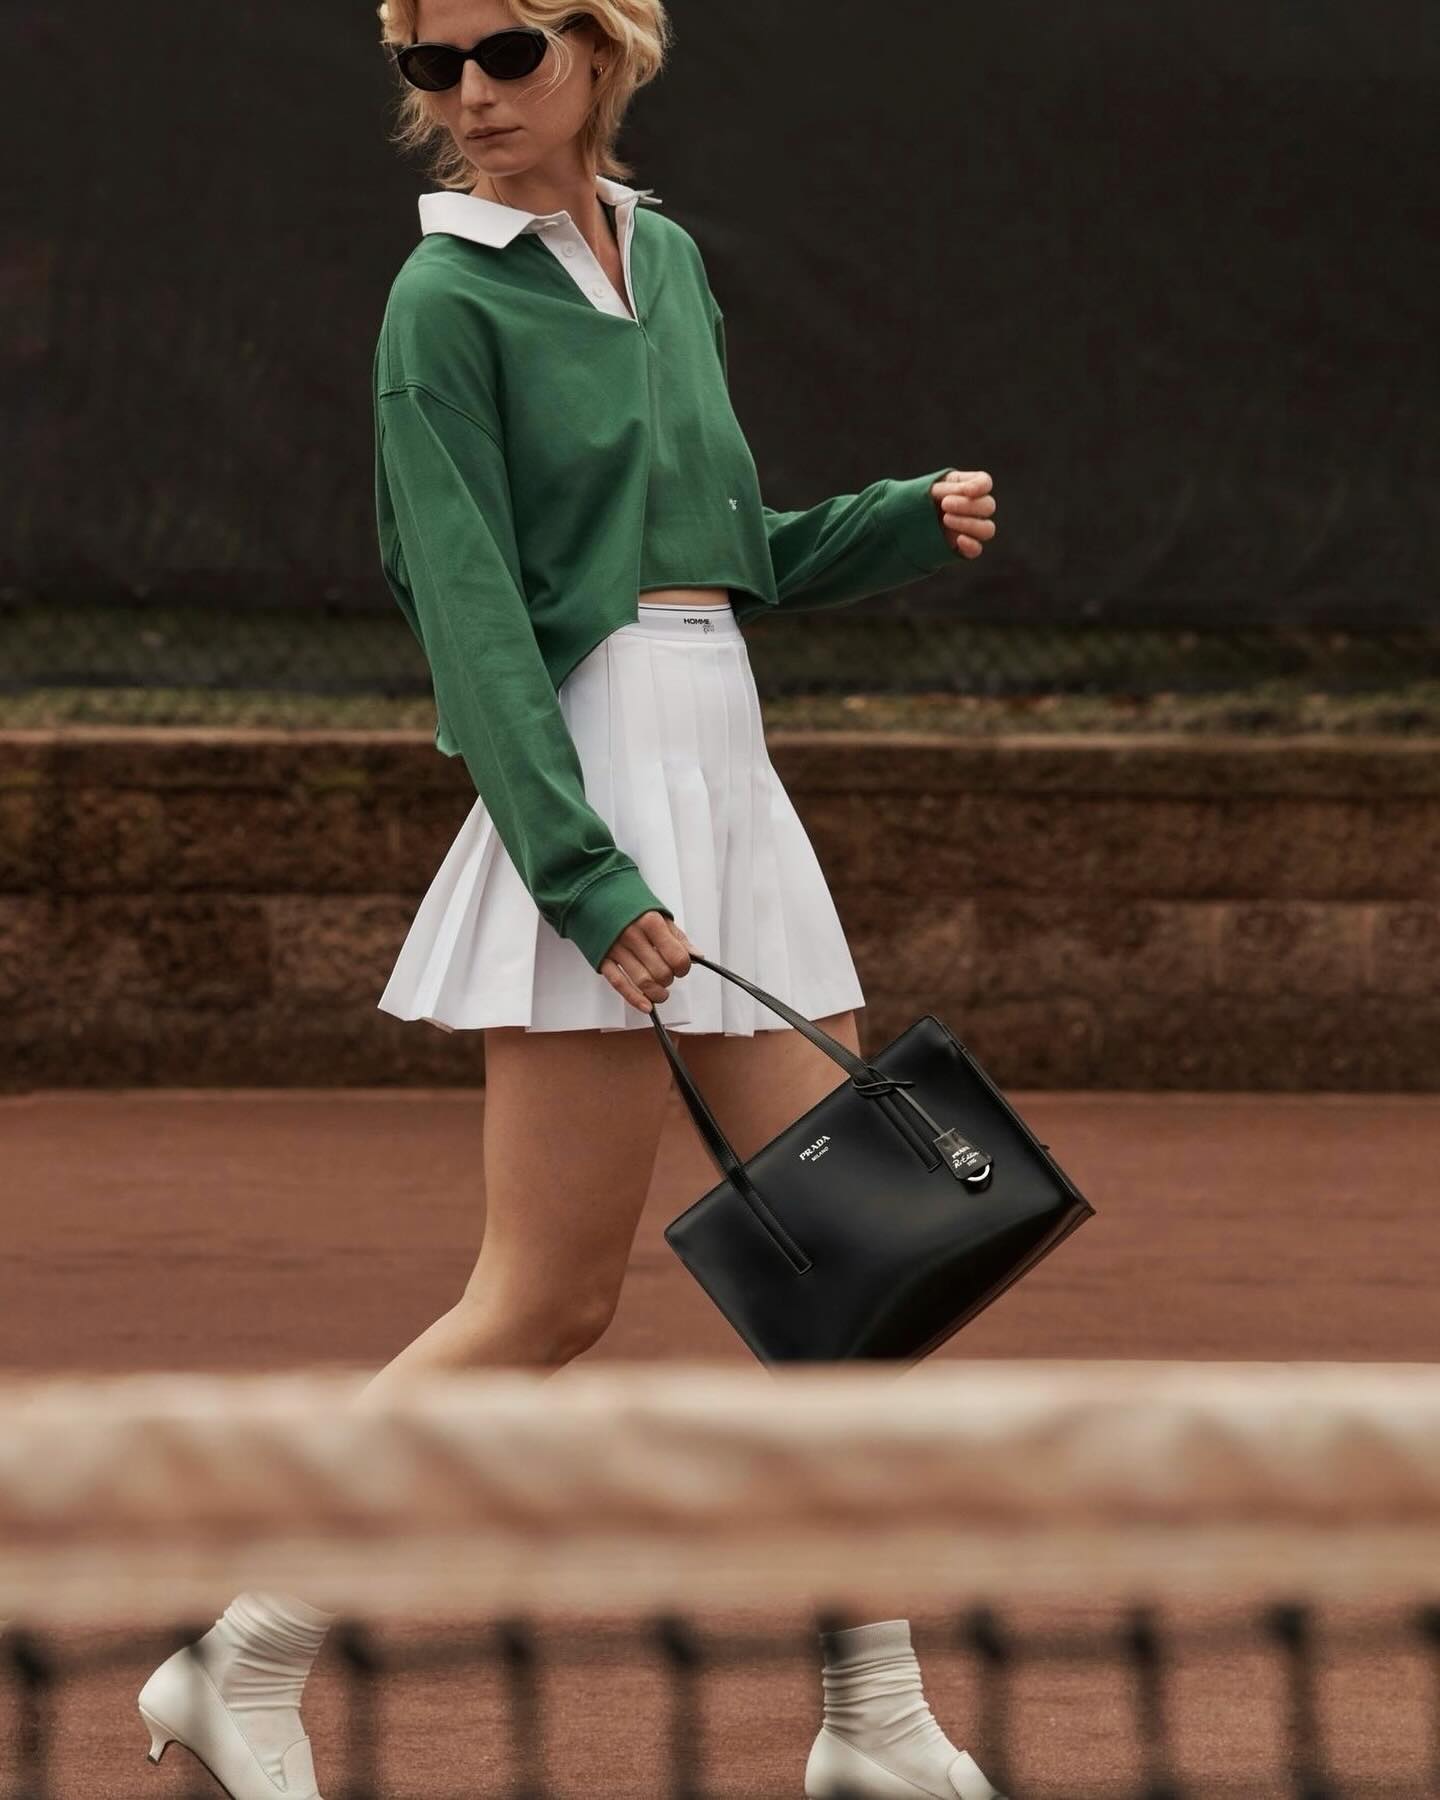 Теннискор – новый модный тренд: как собрать элегантный образ в спортивном стиле